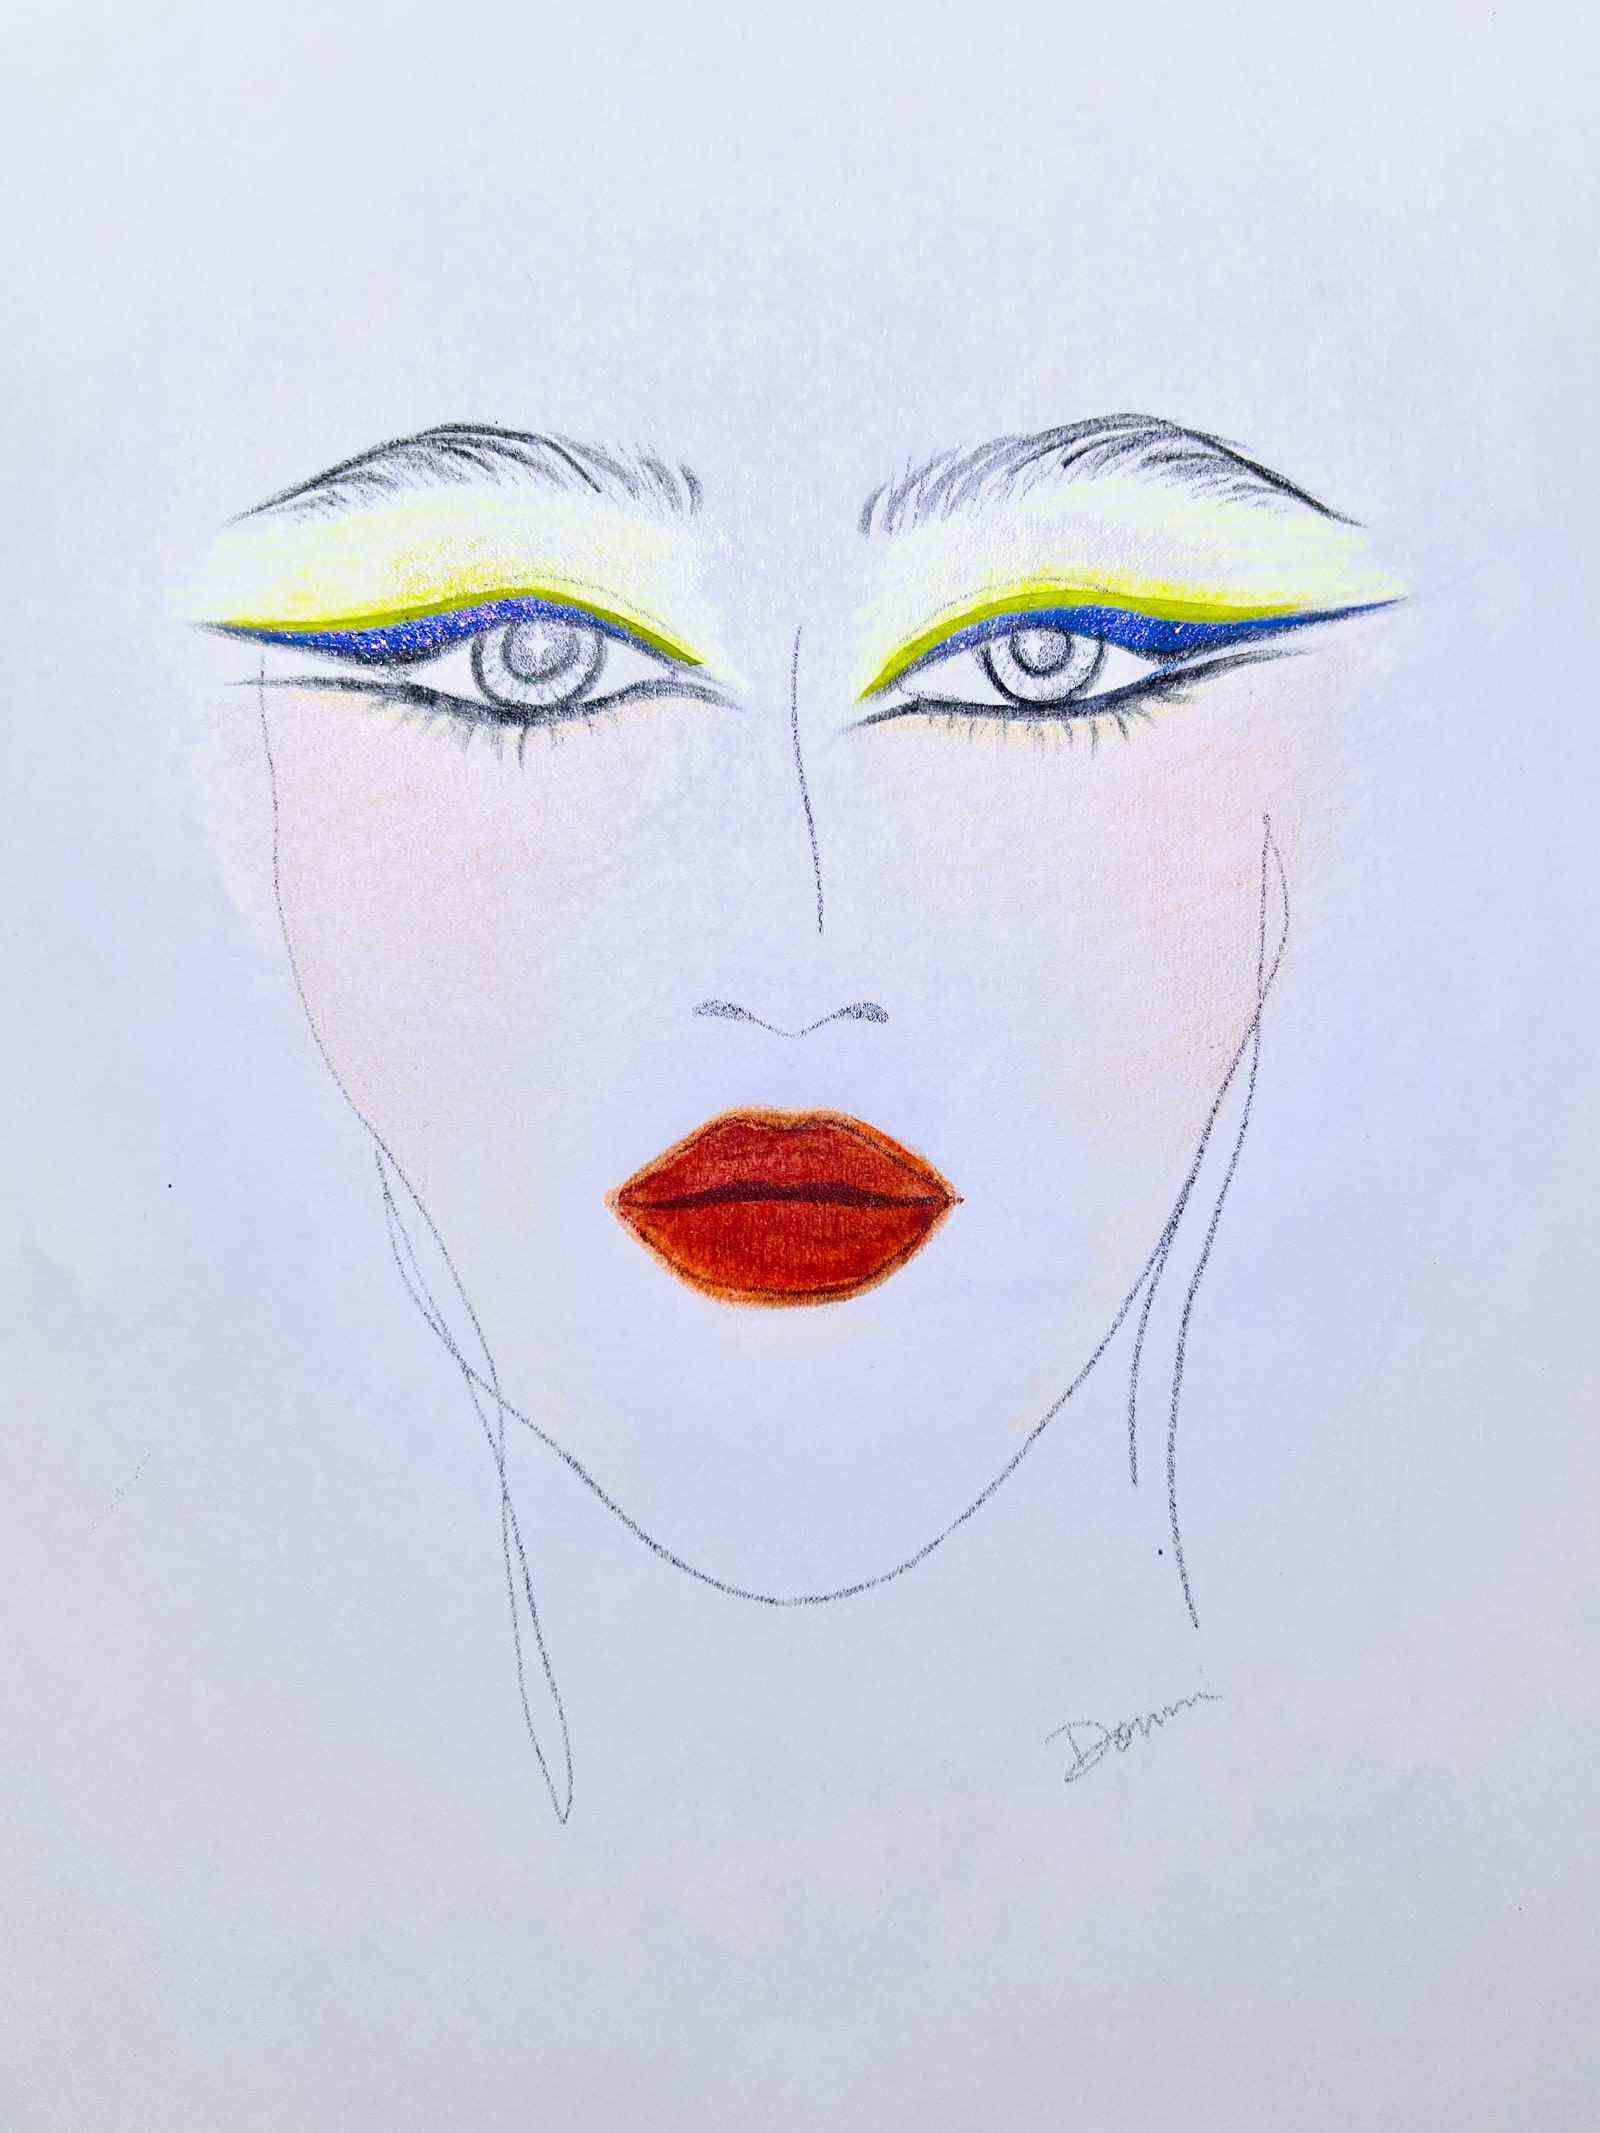 Gesichtsdiagramm des Gesichts mit gelbem und blauem Eyeliner und rotem Lippenstift